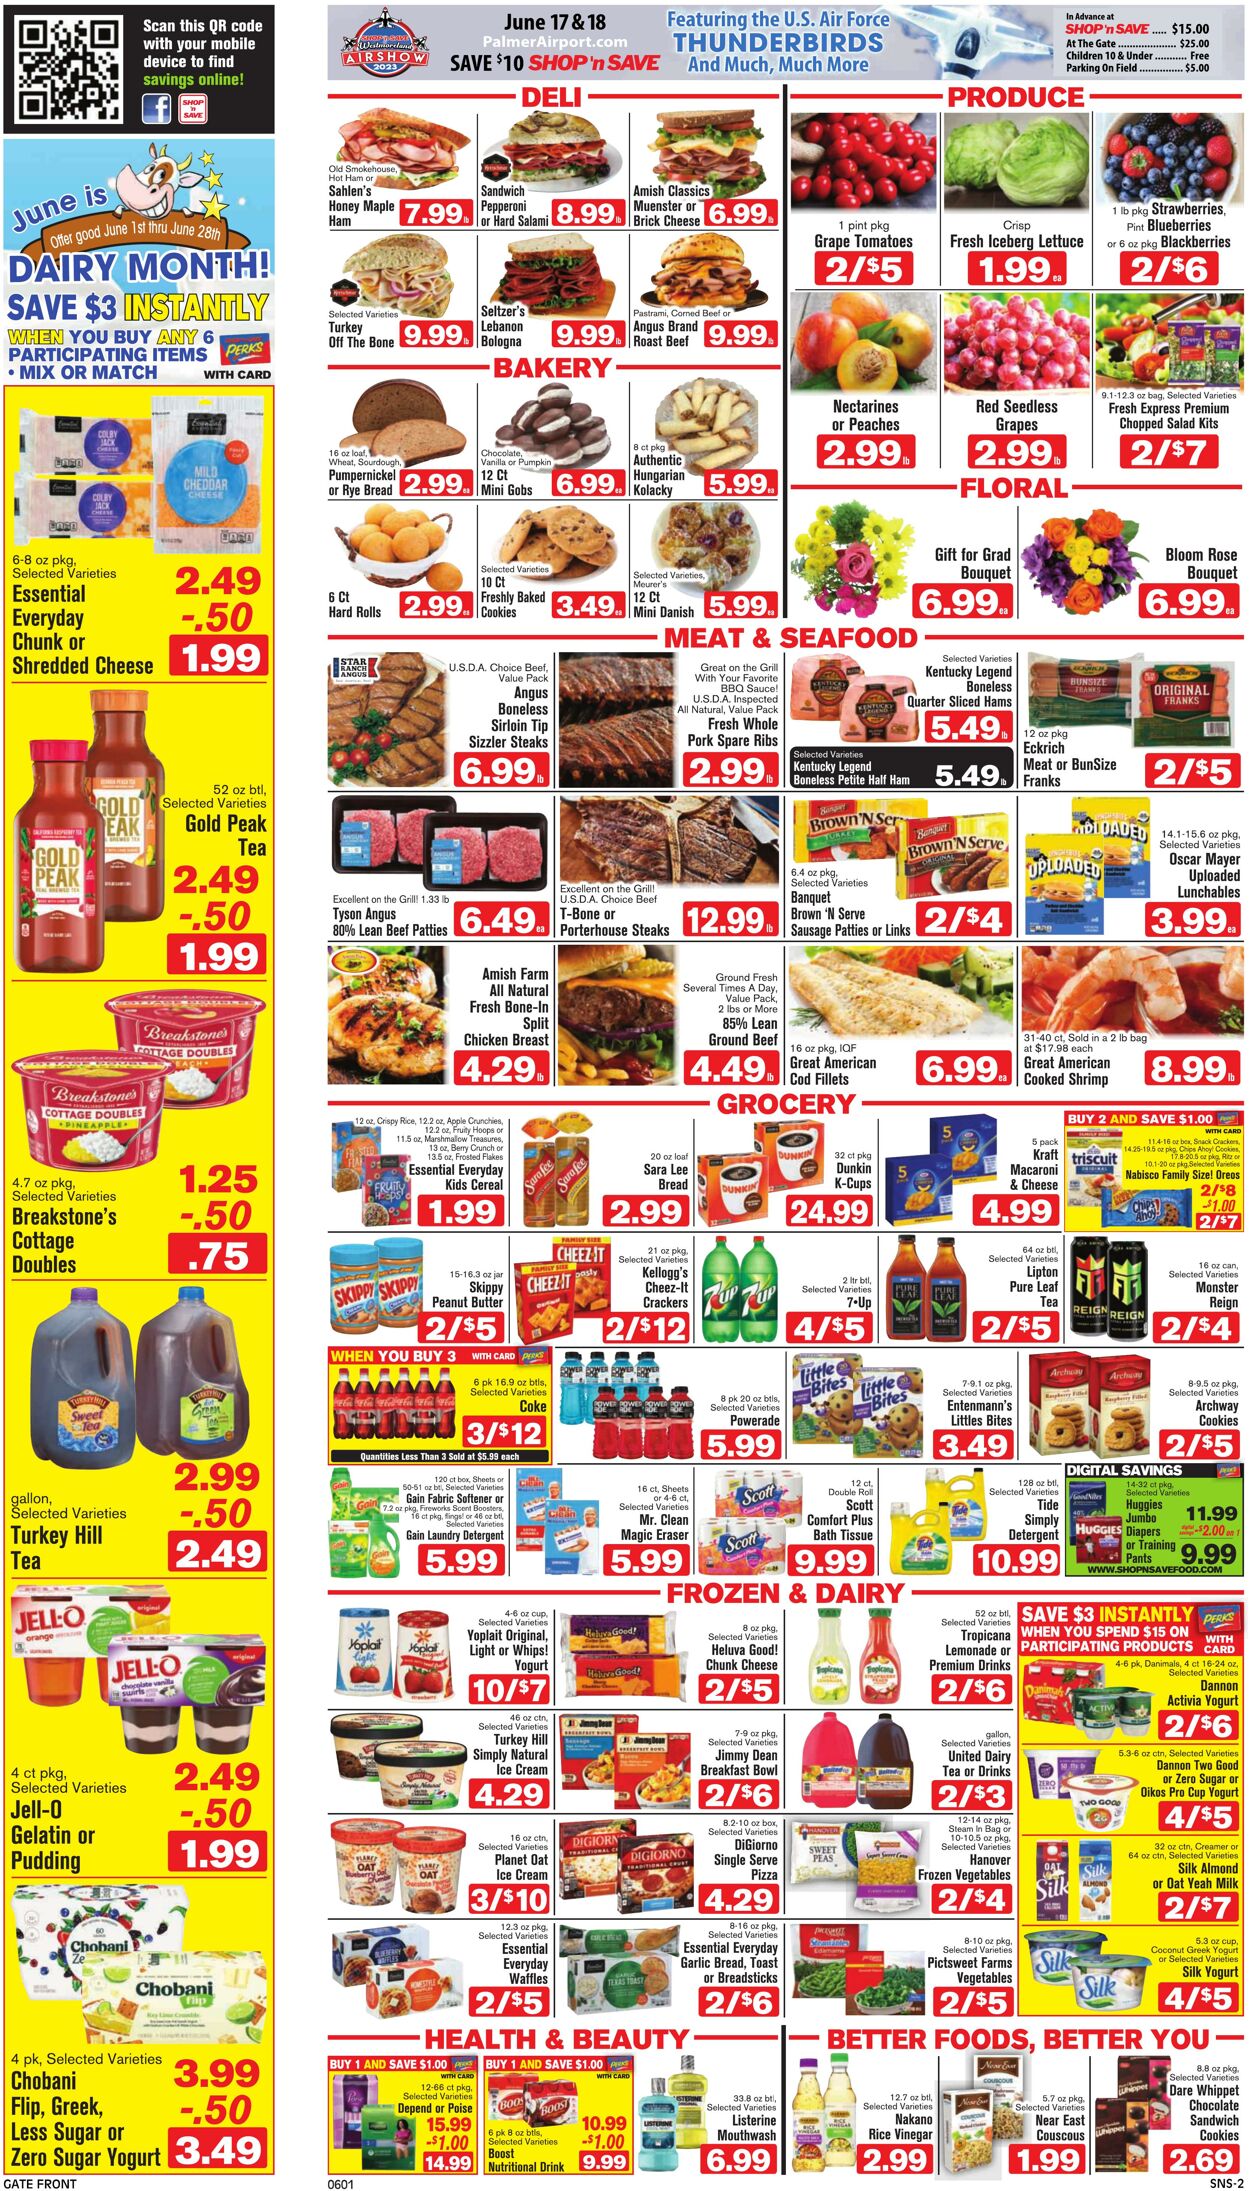 Weekly ad Shop'n Save 06/01/2023 - 06/07/2023